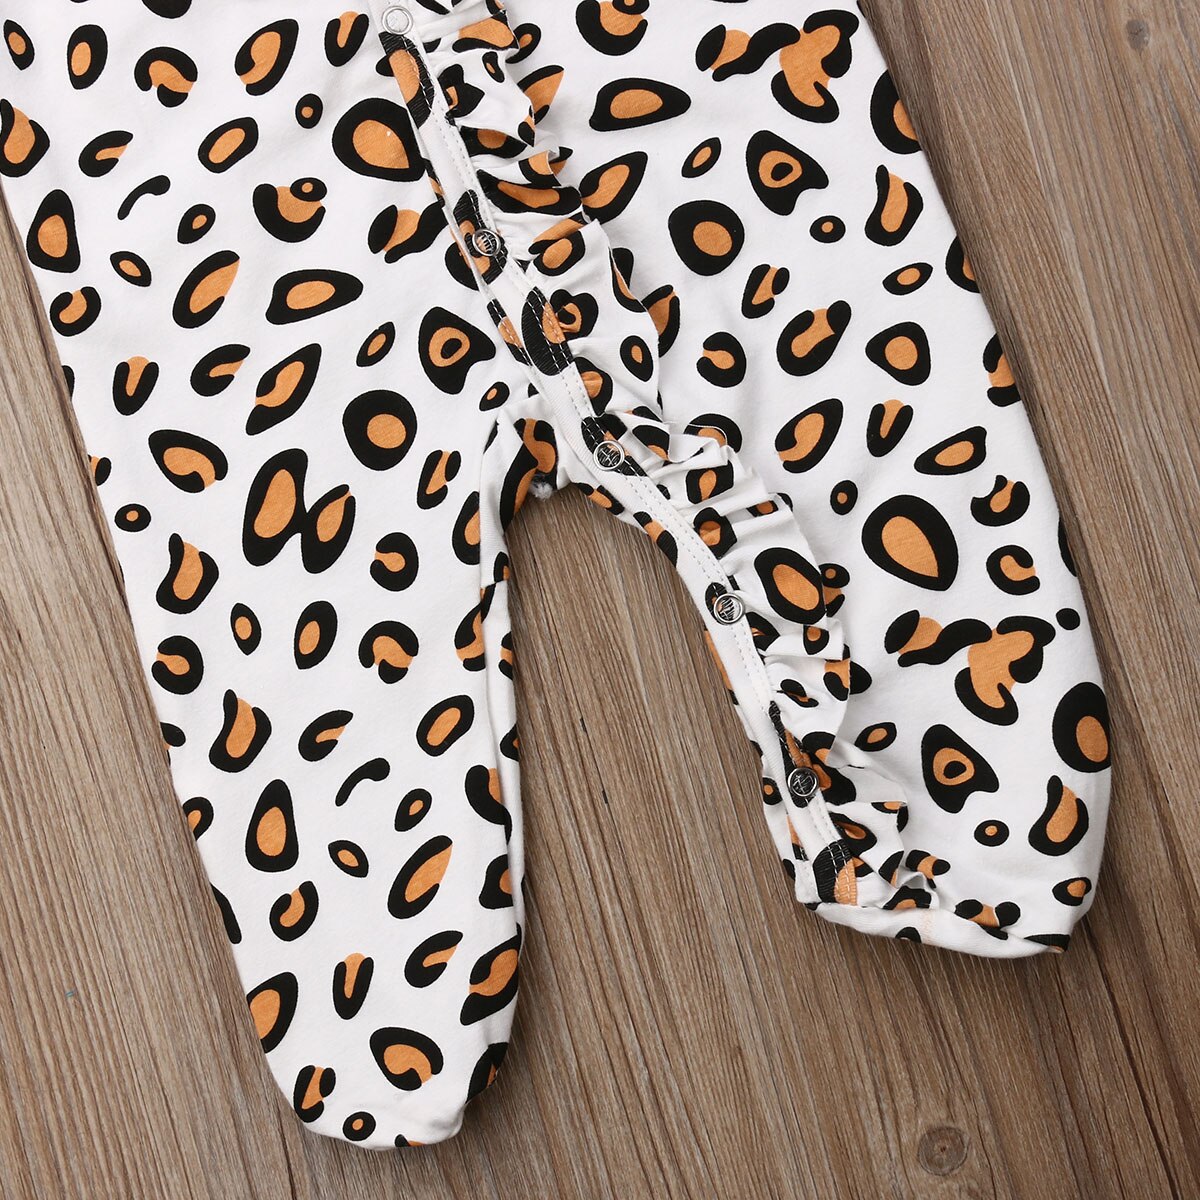 Spædbarn baby pige leopard print lange ærmer knapper op tæppe sovende nattøj